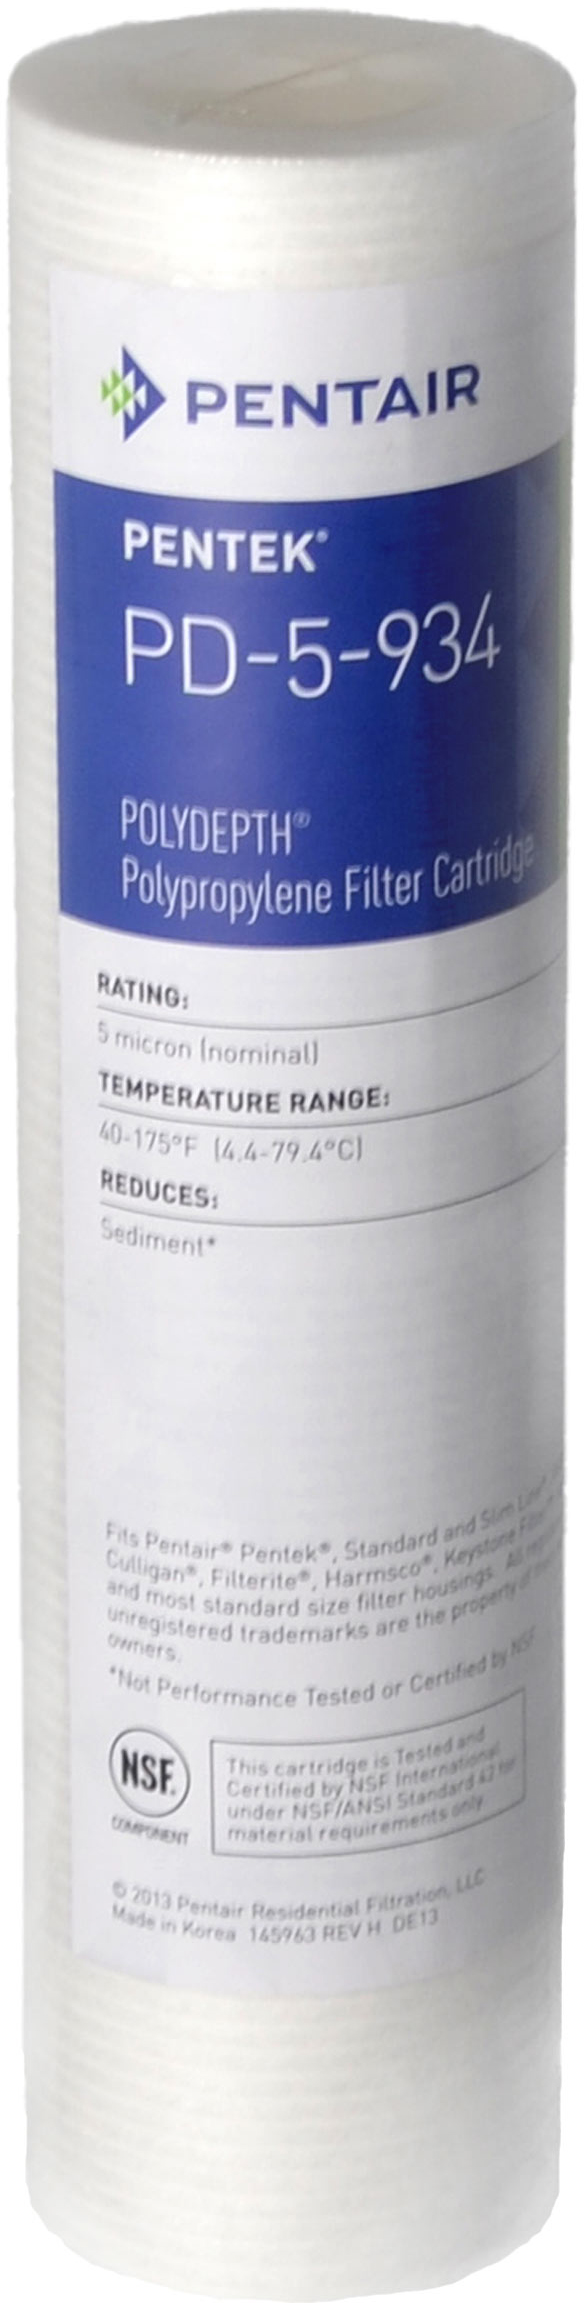 Характеристики картридж для фильтра Pentek PD-5-934 Polydepth (155749-43)